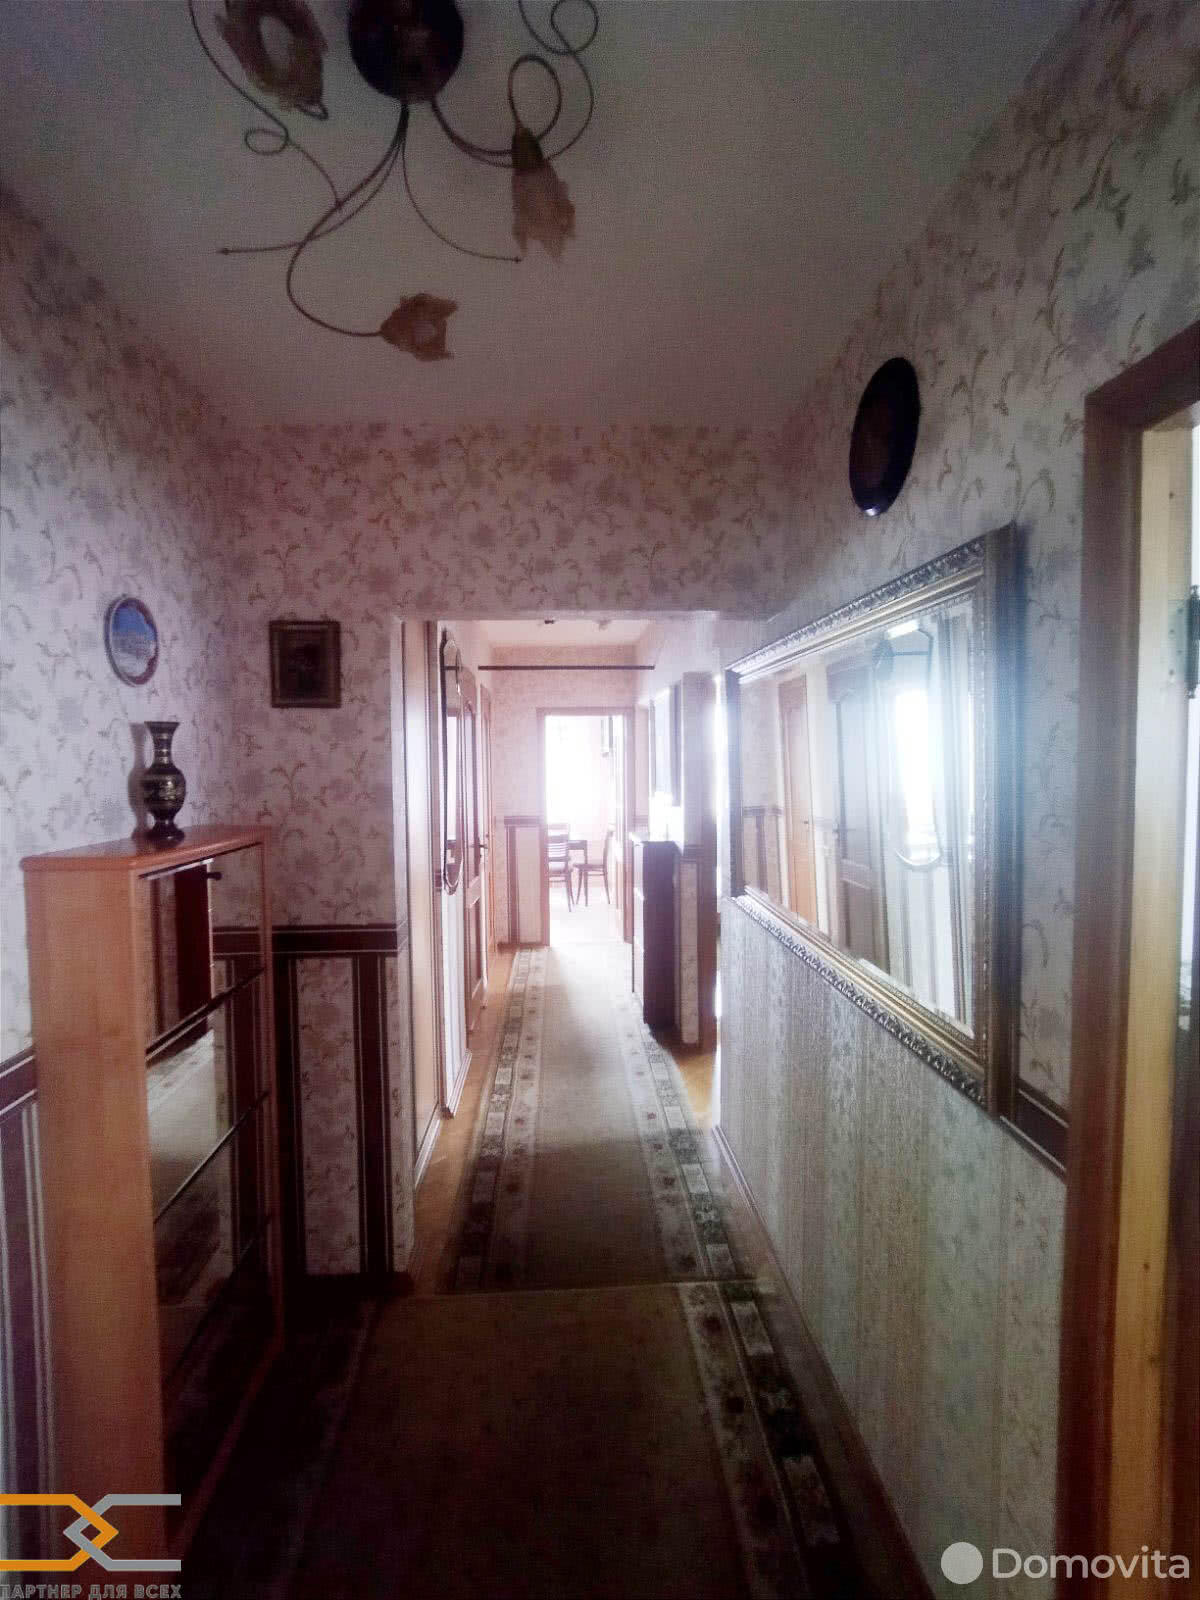 квартира, Минск, ул. Сурганова, д. 76, стоимость аренды 1 444 р./мес.